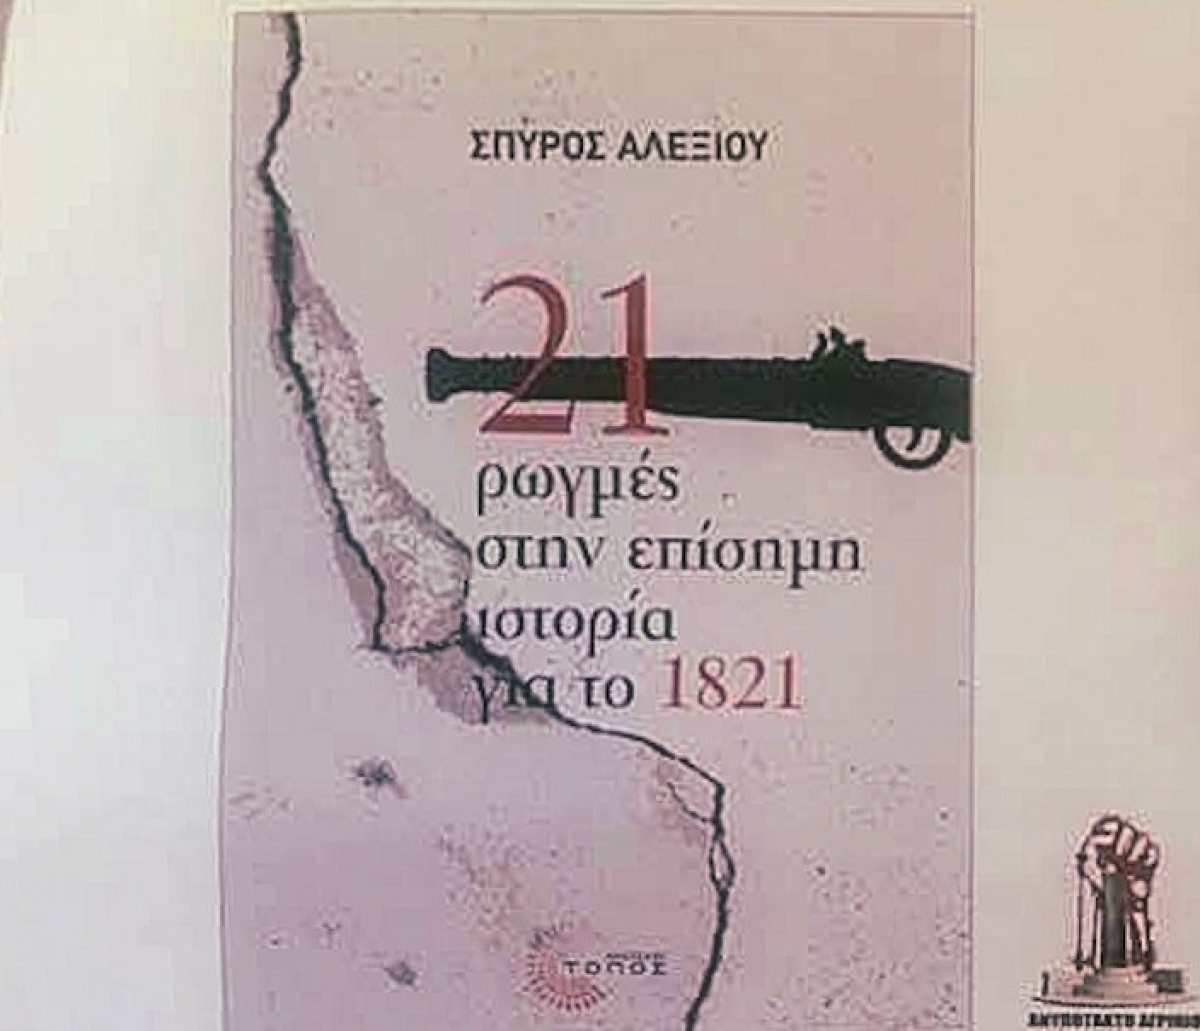 Ανυπότακτο Αγρίνιο: βιβλιοπαρουσίαση για τις «21 ρωγμές στην επίσημη Ιστορία του 1821» (Τετ 16/6/2021 20:00)